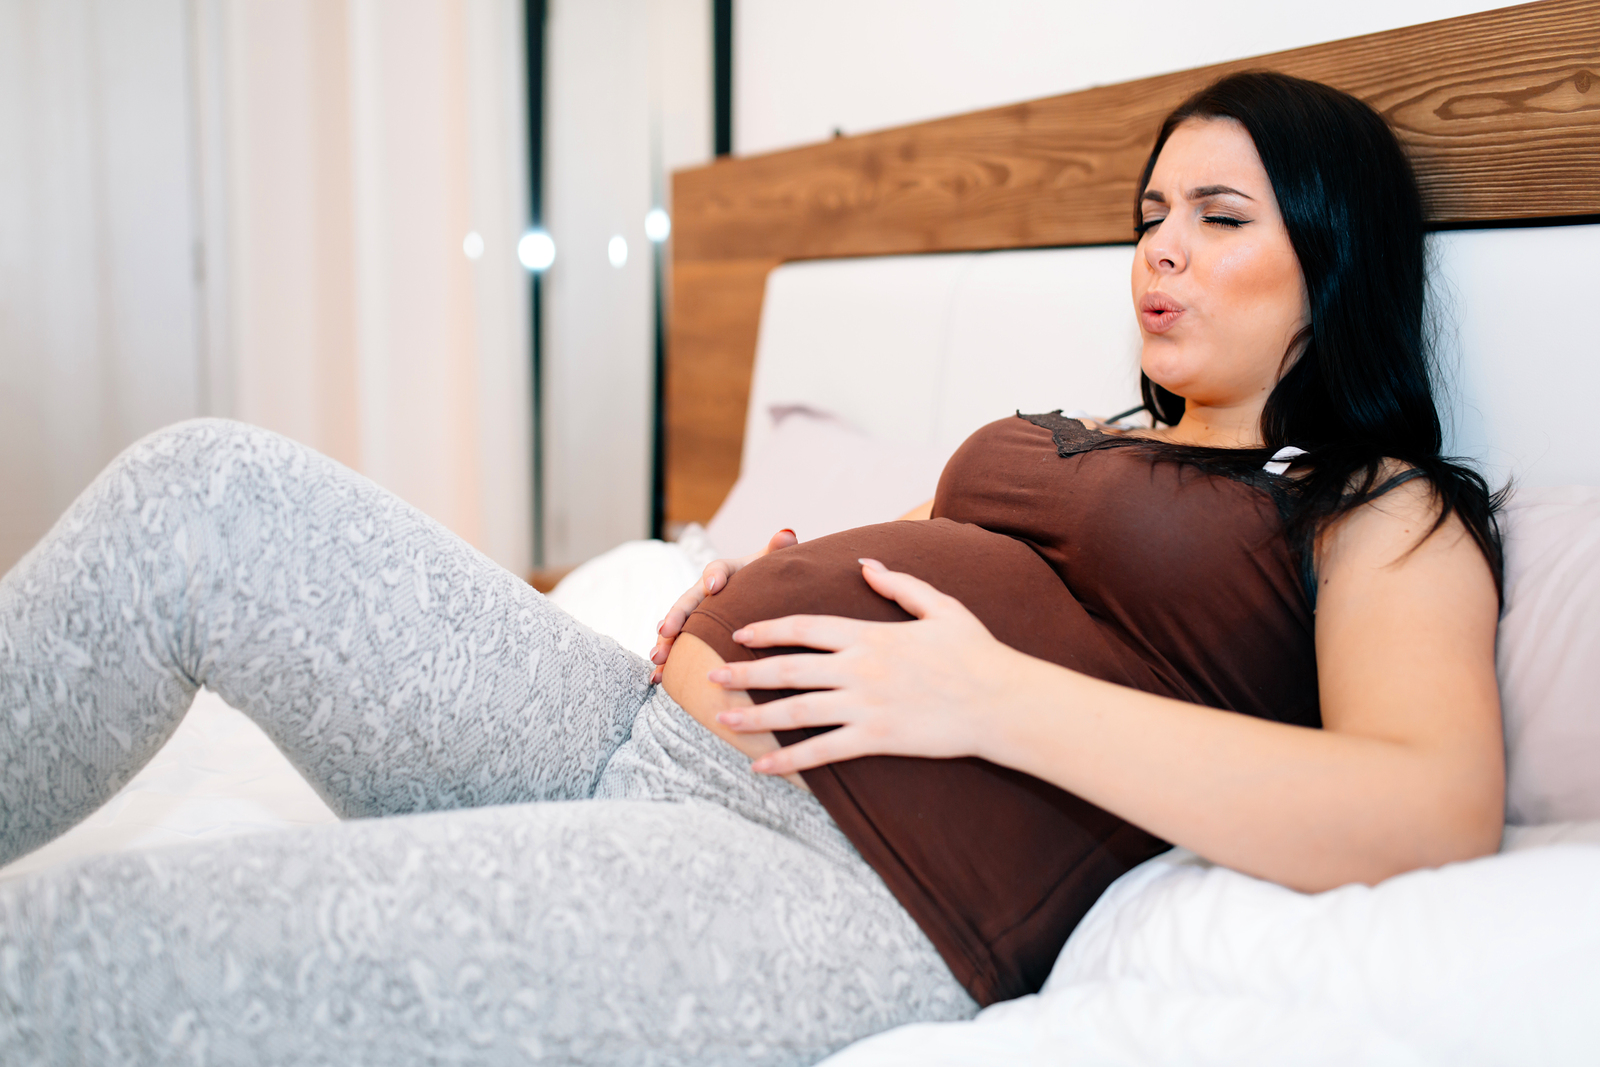 Как начинаются схватки при беременности